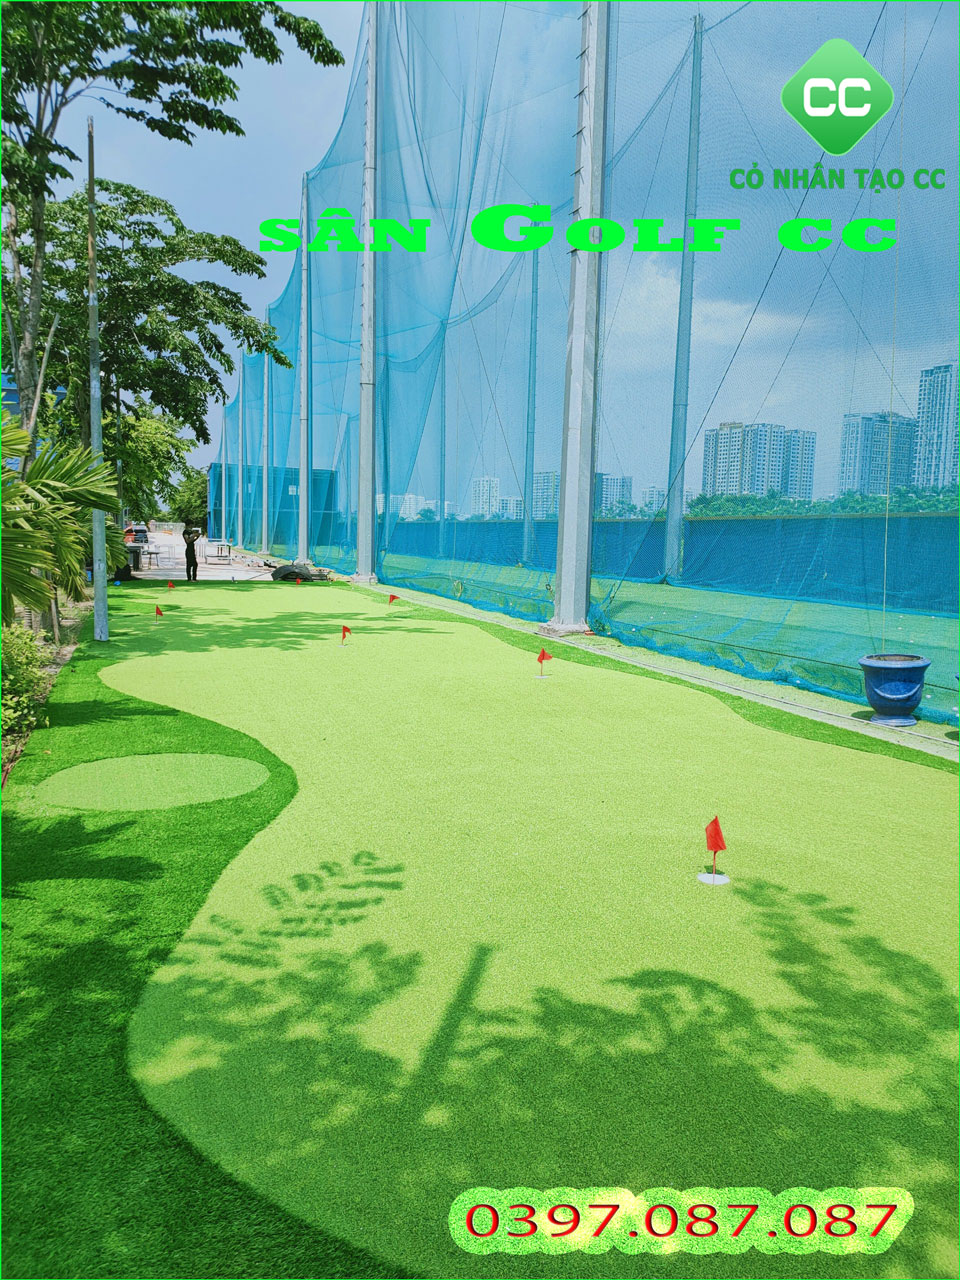 cỏ nhân tạo golf